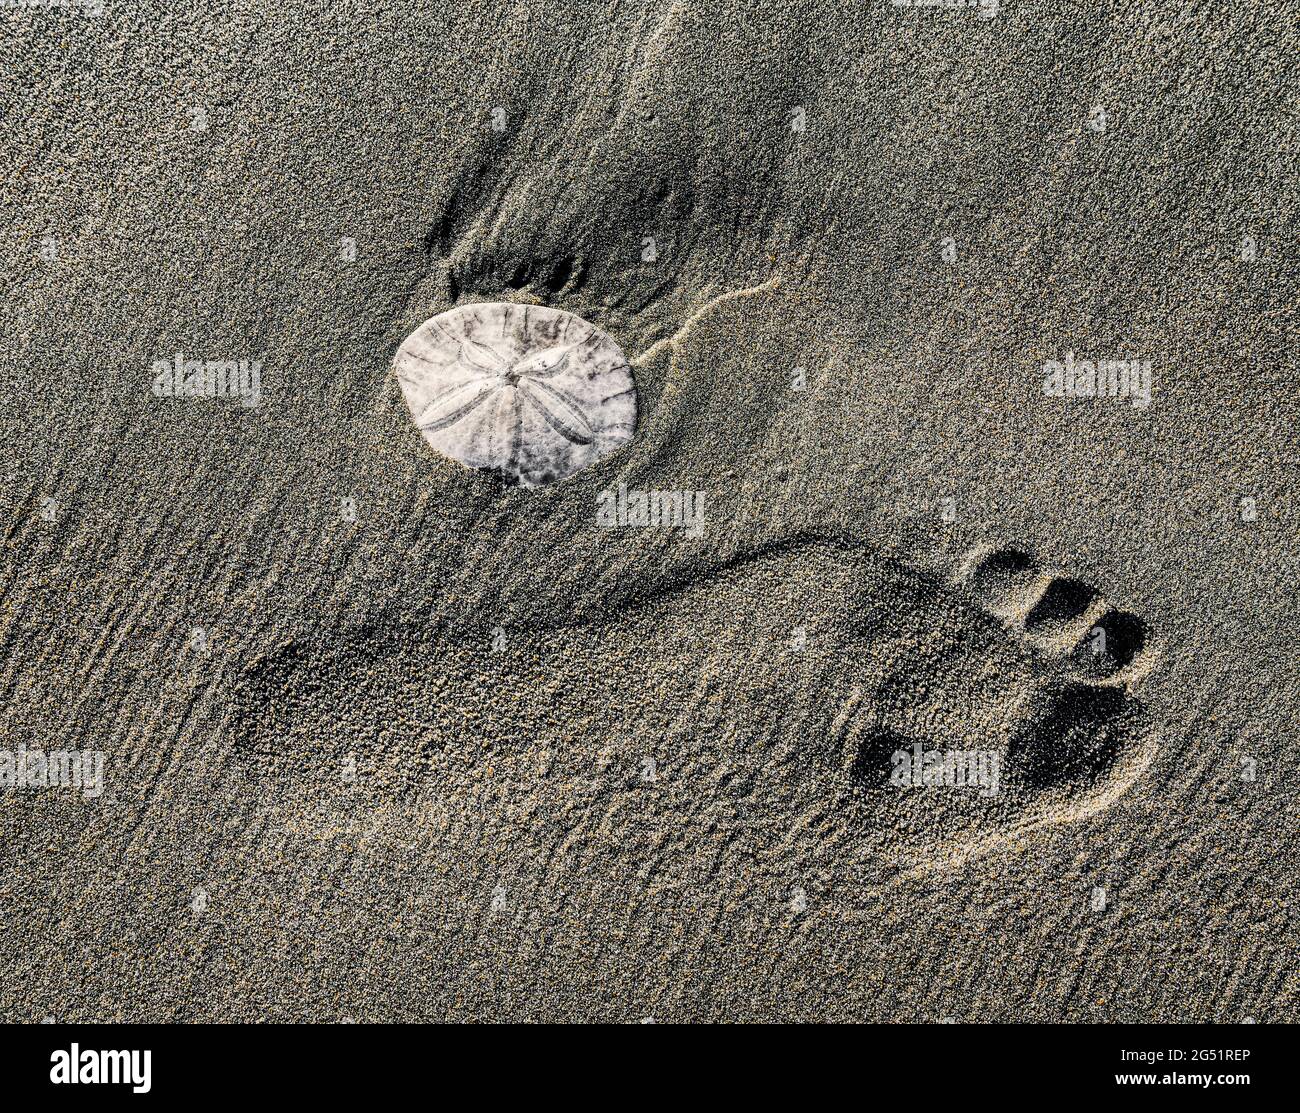 Footprint and sand dollar (Clypeasteroida) on beach Stock Photo